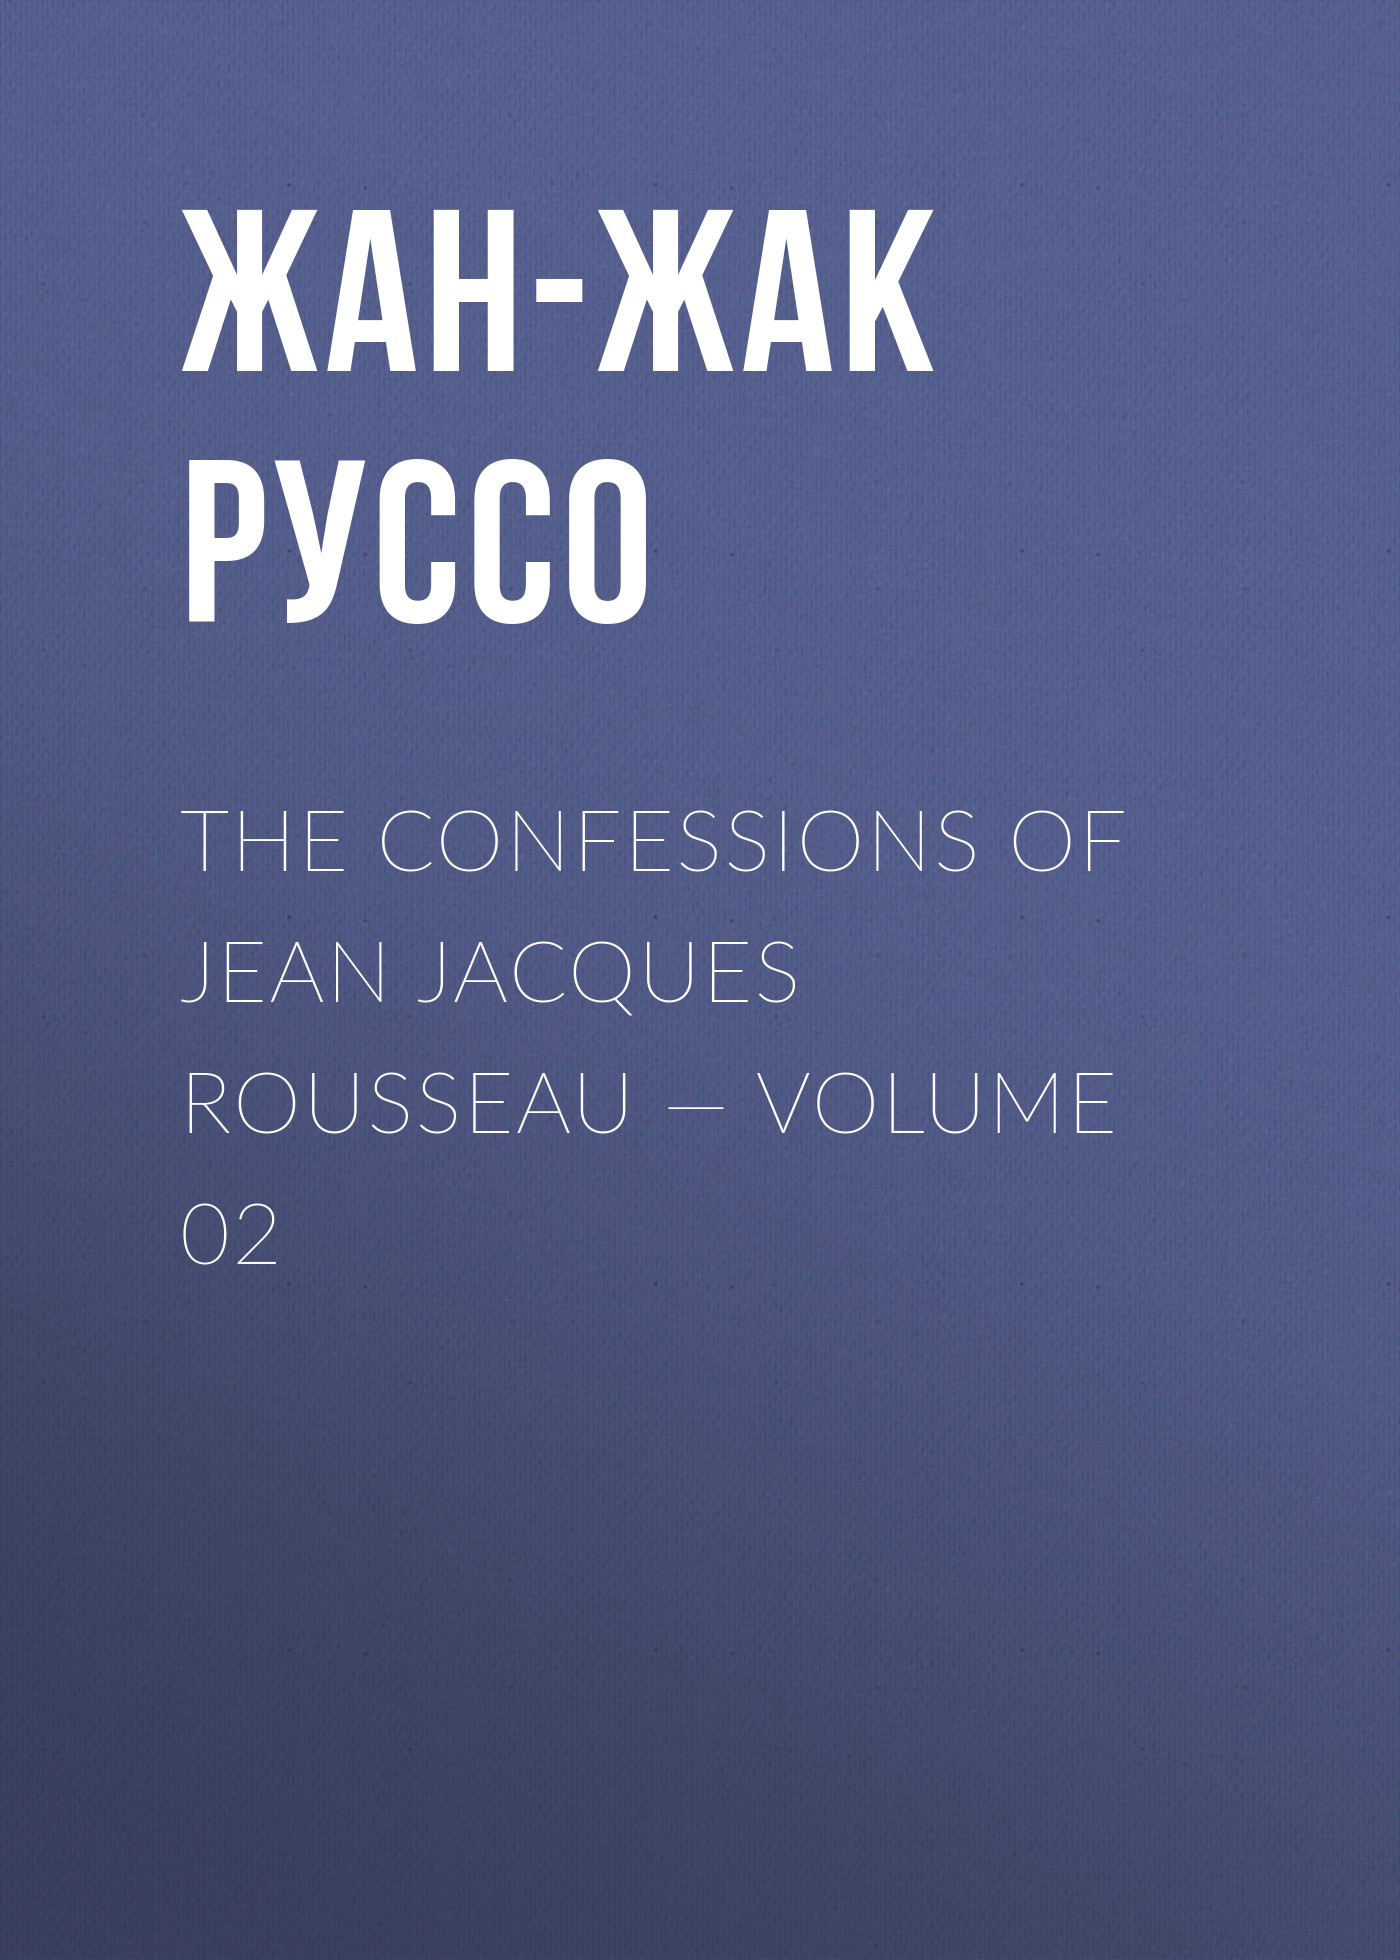 Книга The Confessions of Jean Jacques Rousseau – Volume 02 из серии , созданная Жан-Жак Руссо, может относится к жанру Биографии и Мемуары, Литература 18 века, Зарубежная старинная литература. Стоимость электронной книги The Confessions of Jean Jacques Rousseau – Volume 02 с идентификатором 34840006 составляет 0 руб.